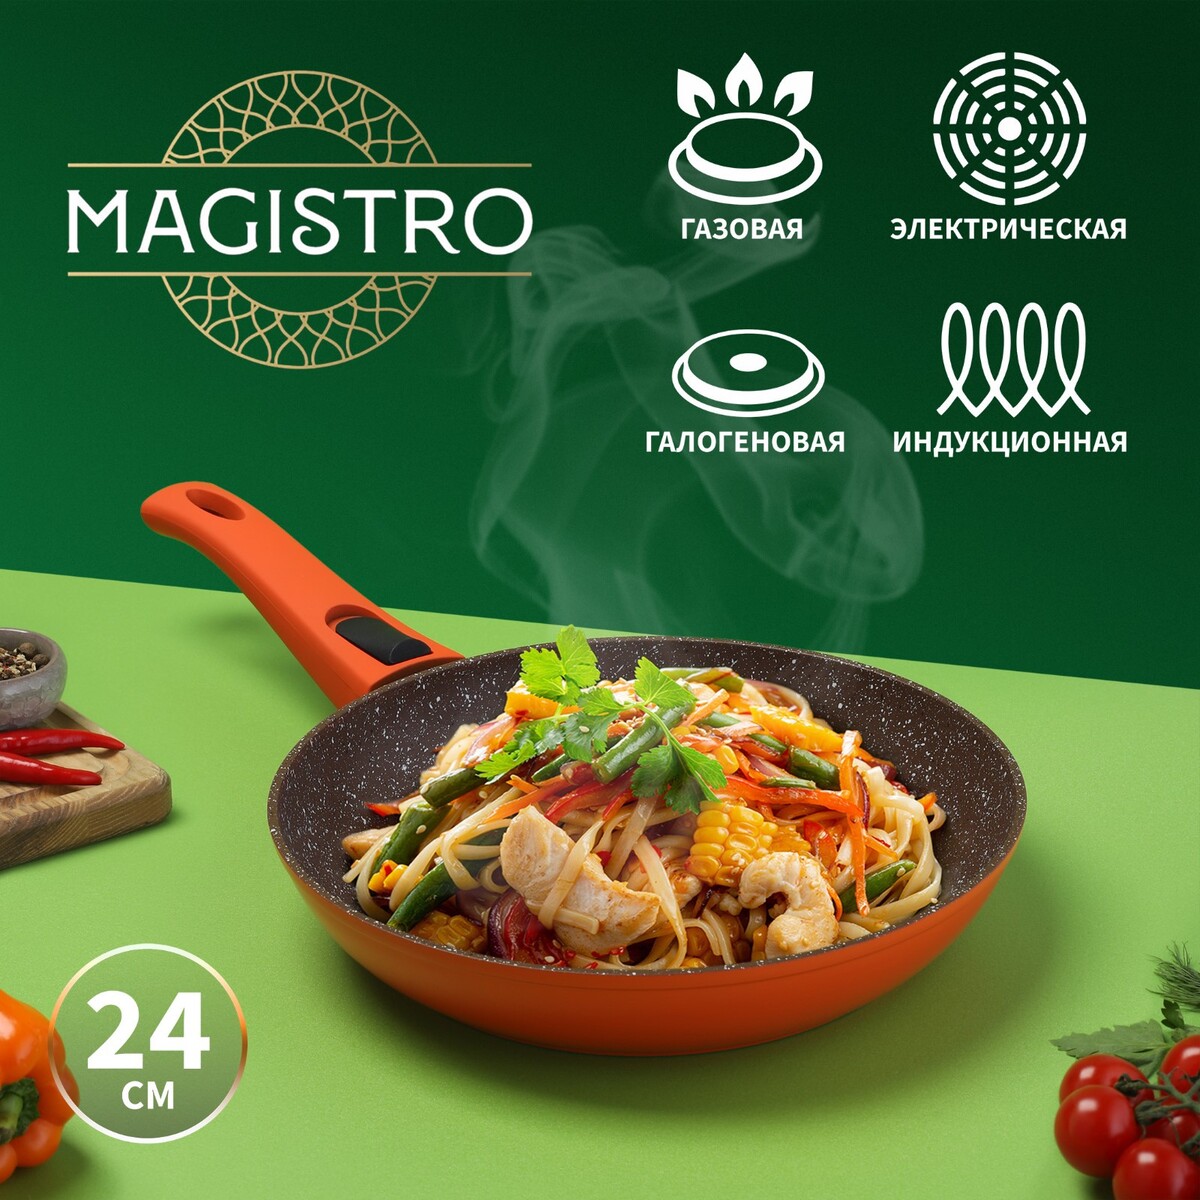 Сковорода magistro terra, d=24 см, съемная ручка soft-touch, антипригарное покрытие, индукция, цвет оранжевый